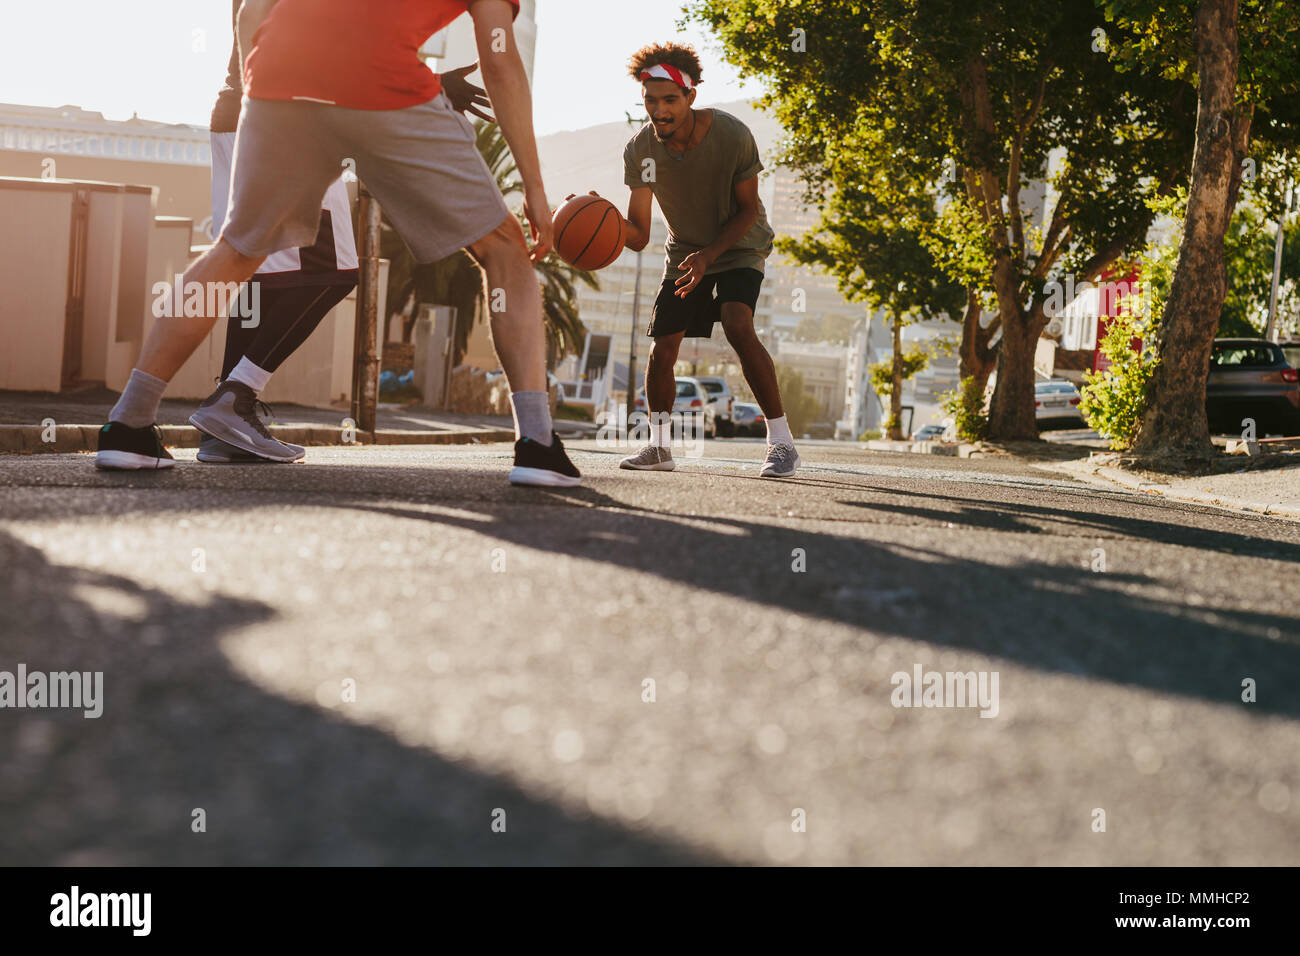 Männer spielen Basketball Spiel an einem sonnigen Tag auf einer leeren Straße. Männer üben Basketball Dribblings auf der Straße. Stockfoto